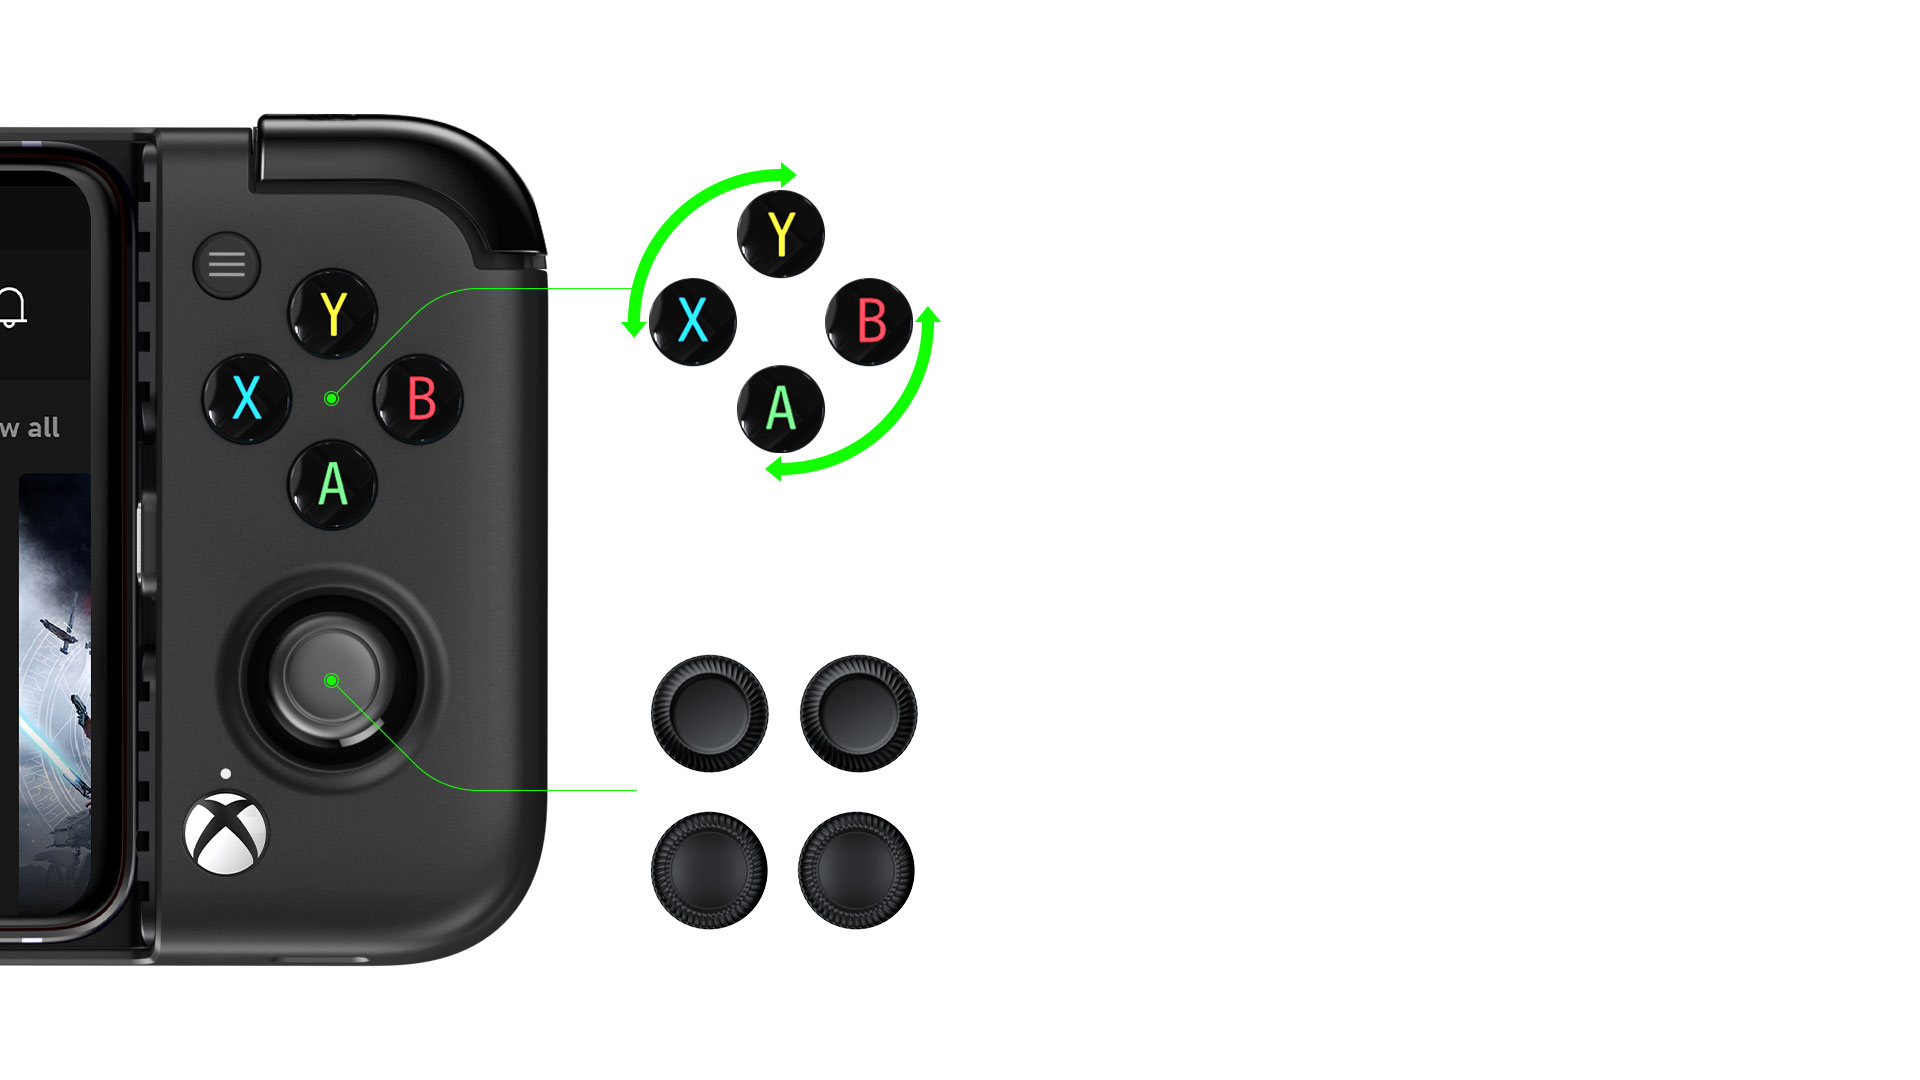 Vista de lateral derecho que muestra las distintas opciones de botón y joystick